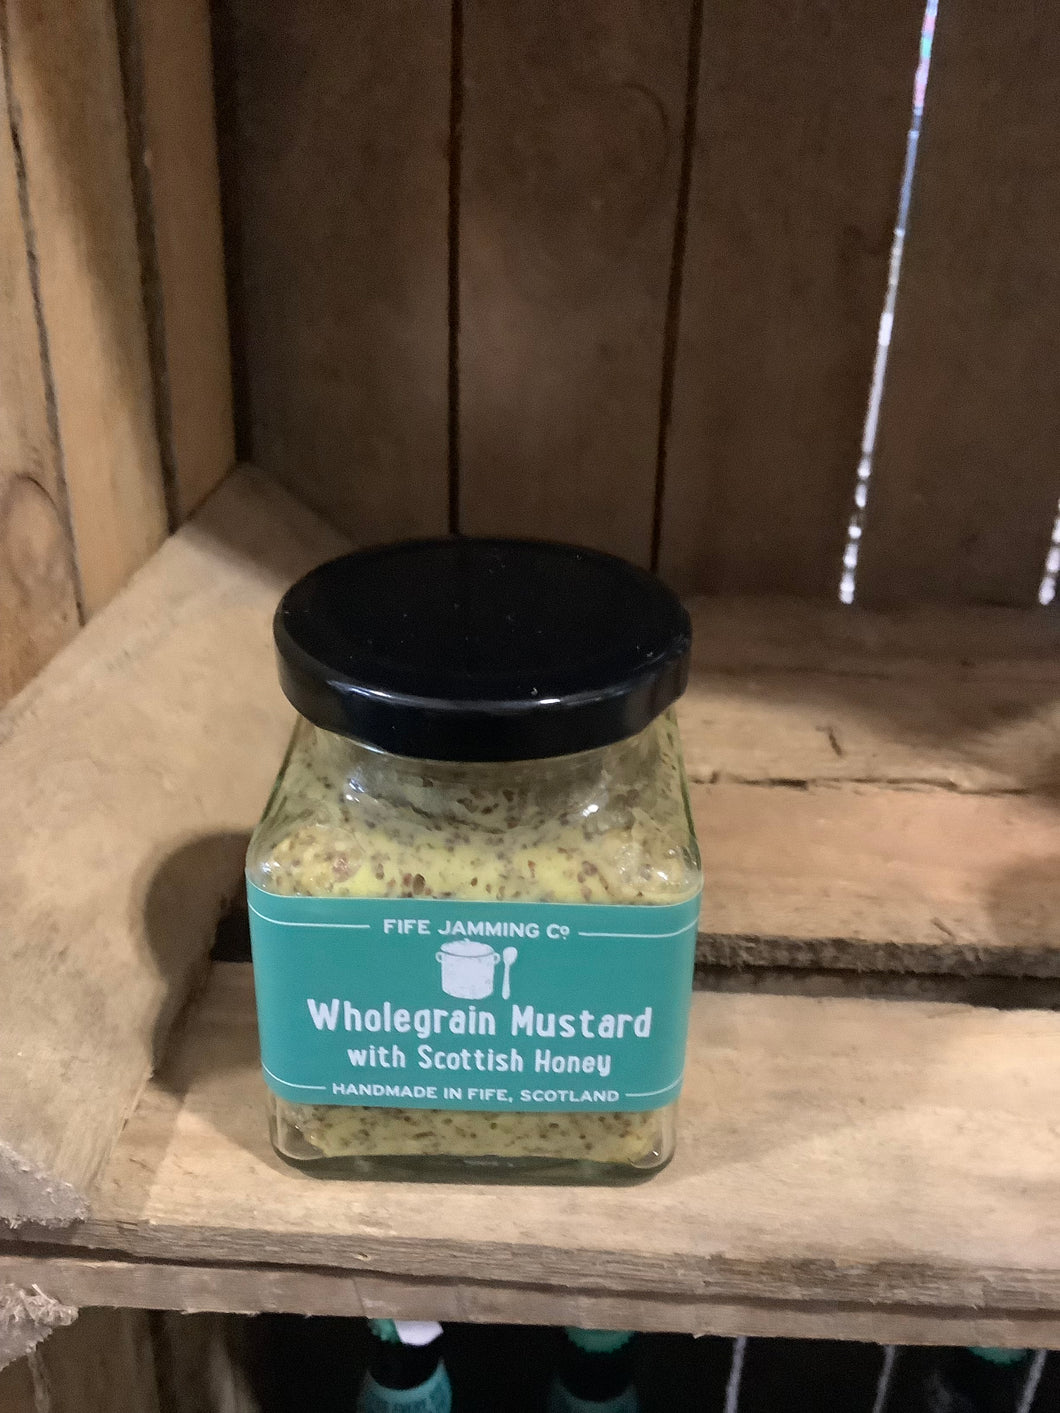 Fife Jamming Co. Wholegrain Mustard with Scottish Honey